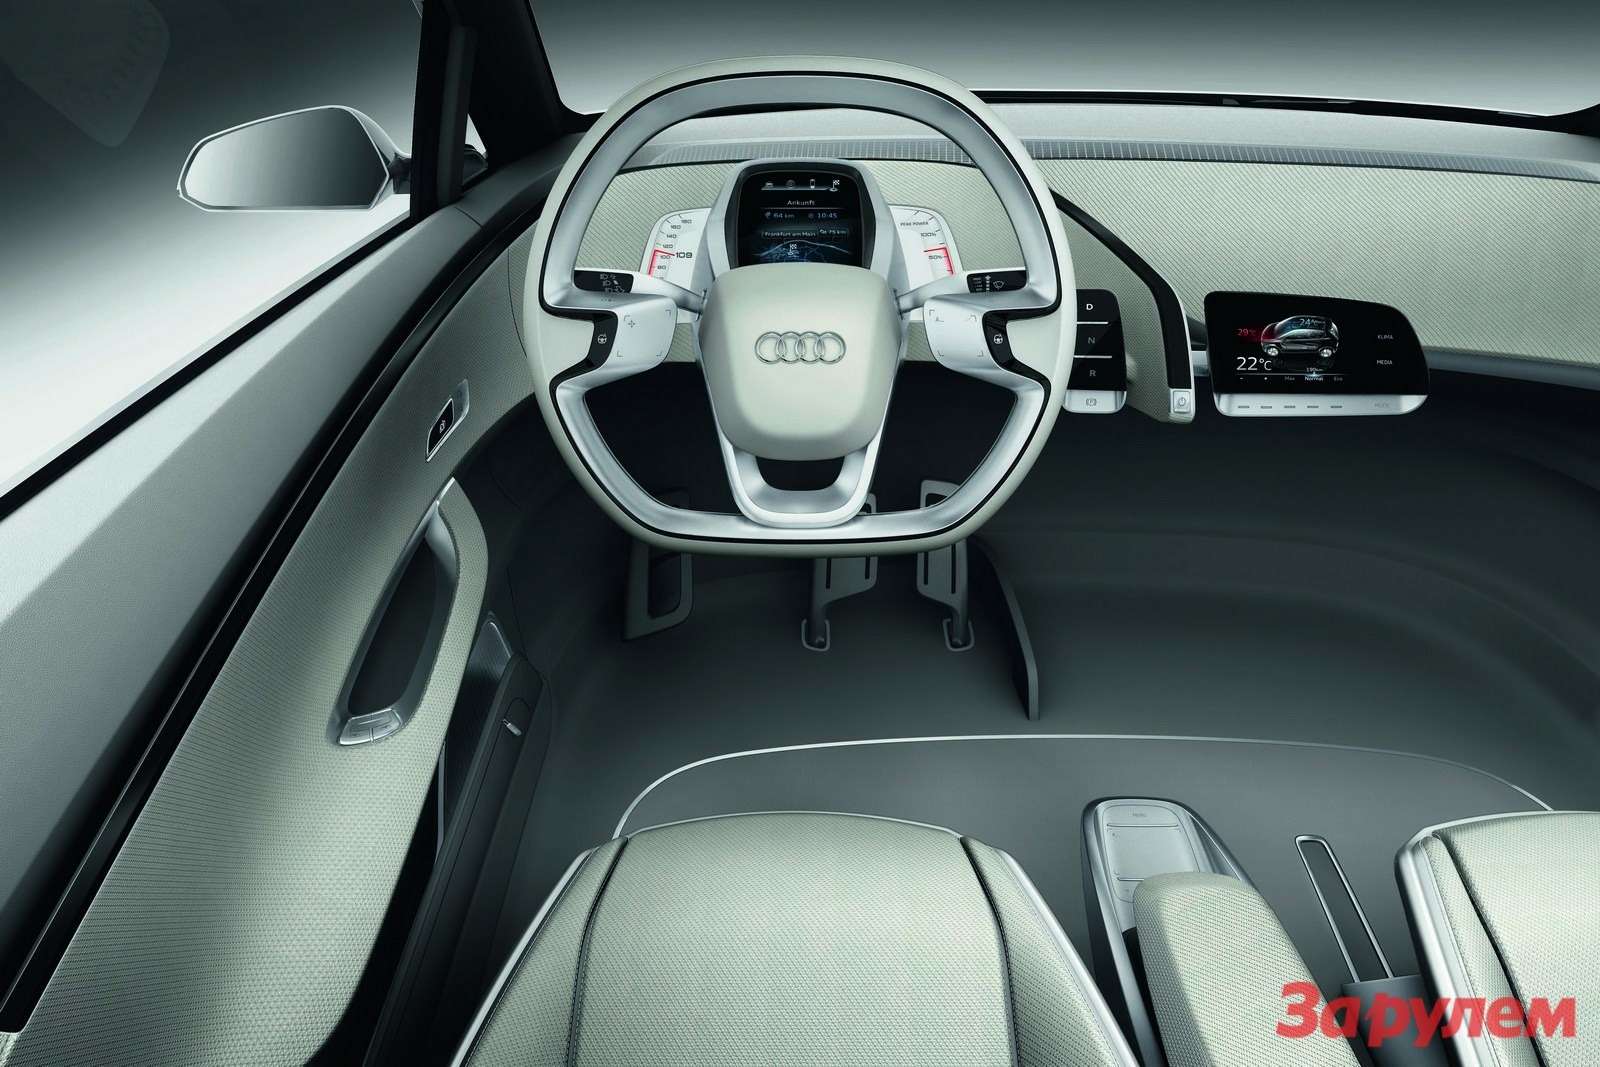 Audi_A2-Concept-12